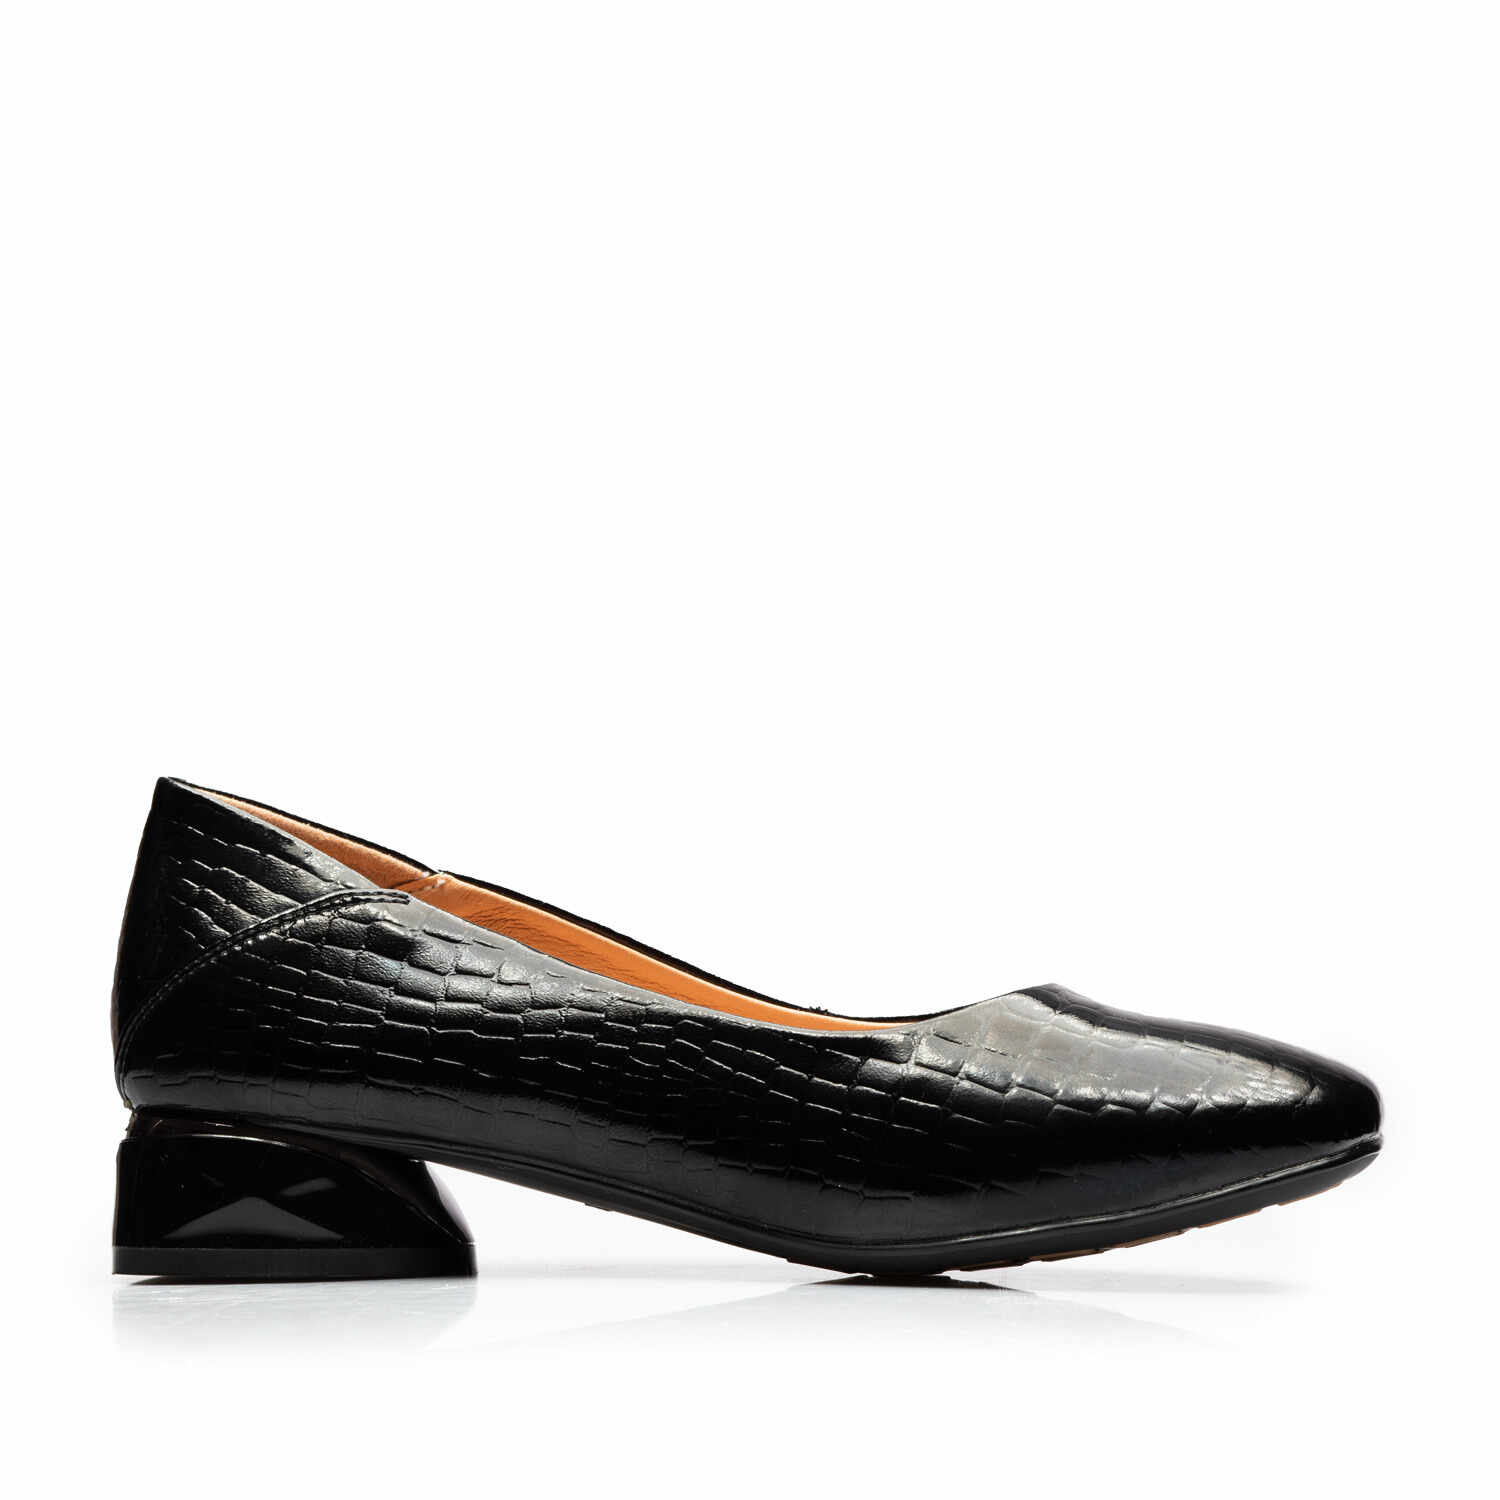 Pantofi eleganți damă din piele naturală - 5200 Negru Lac